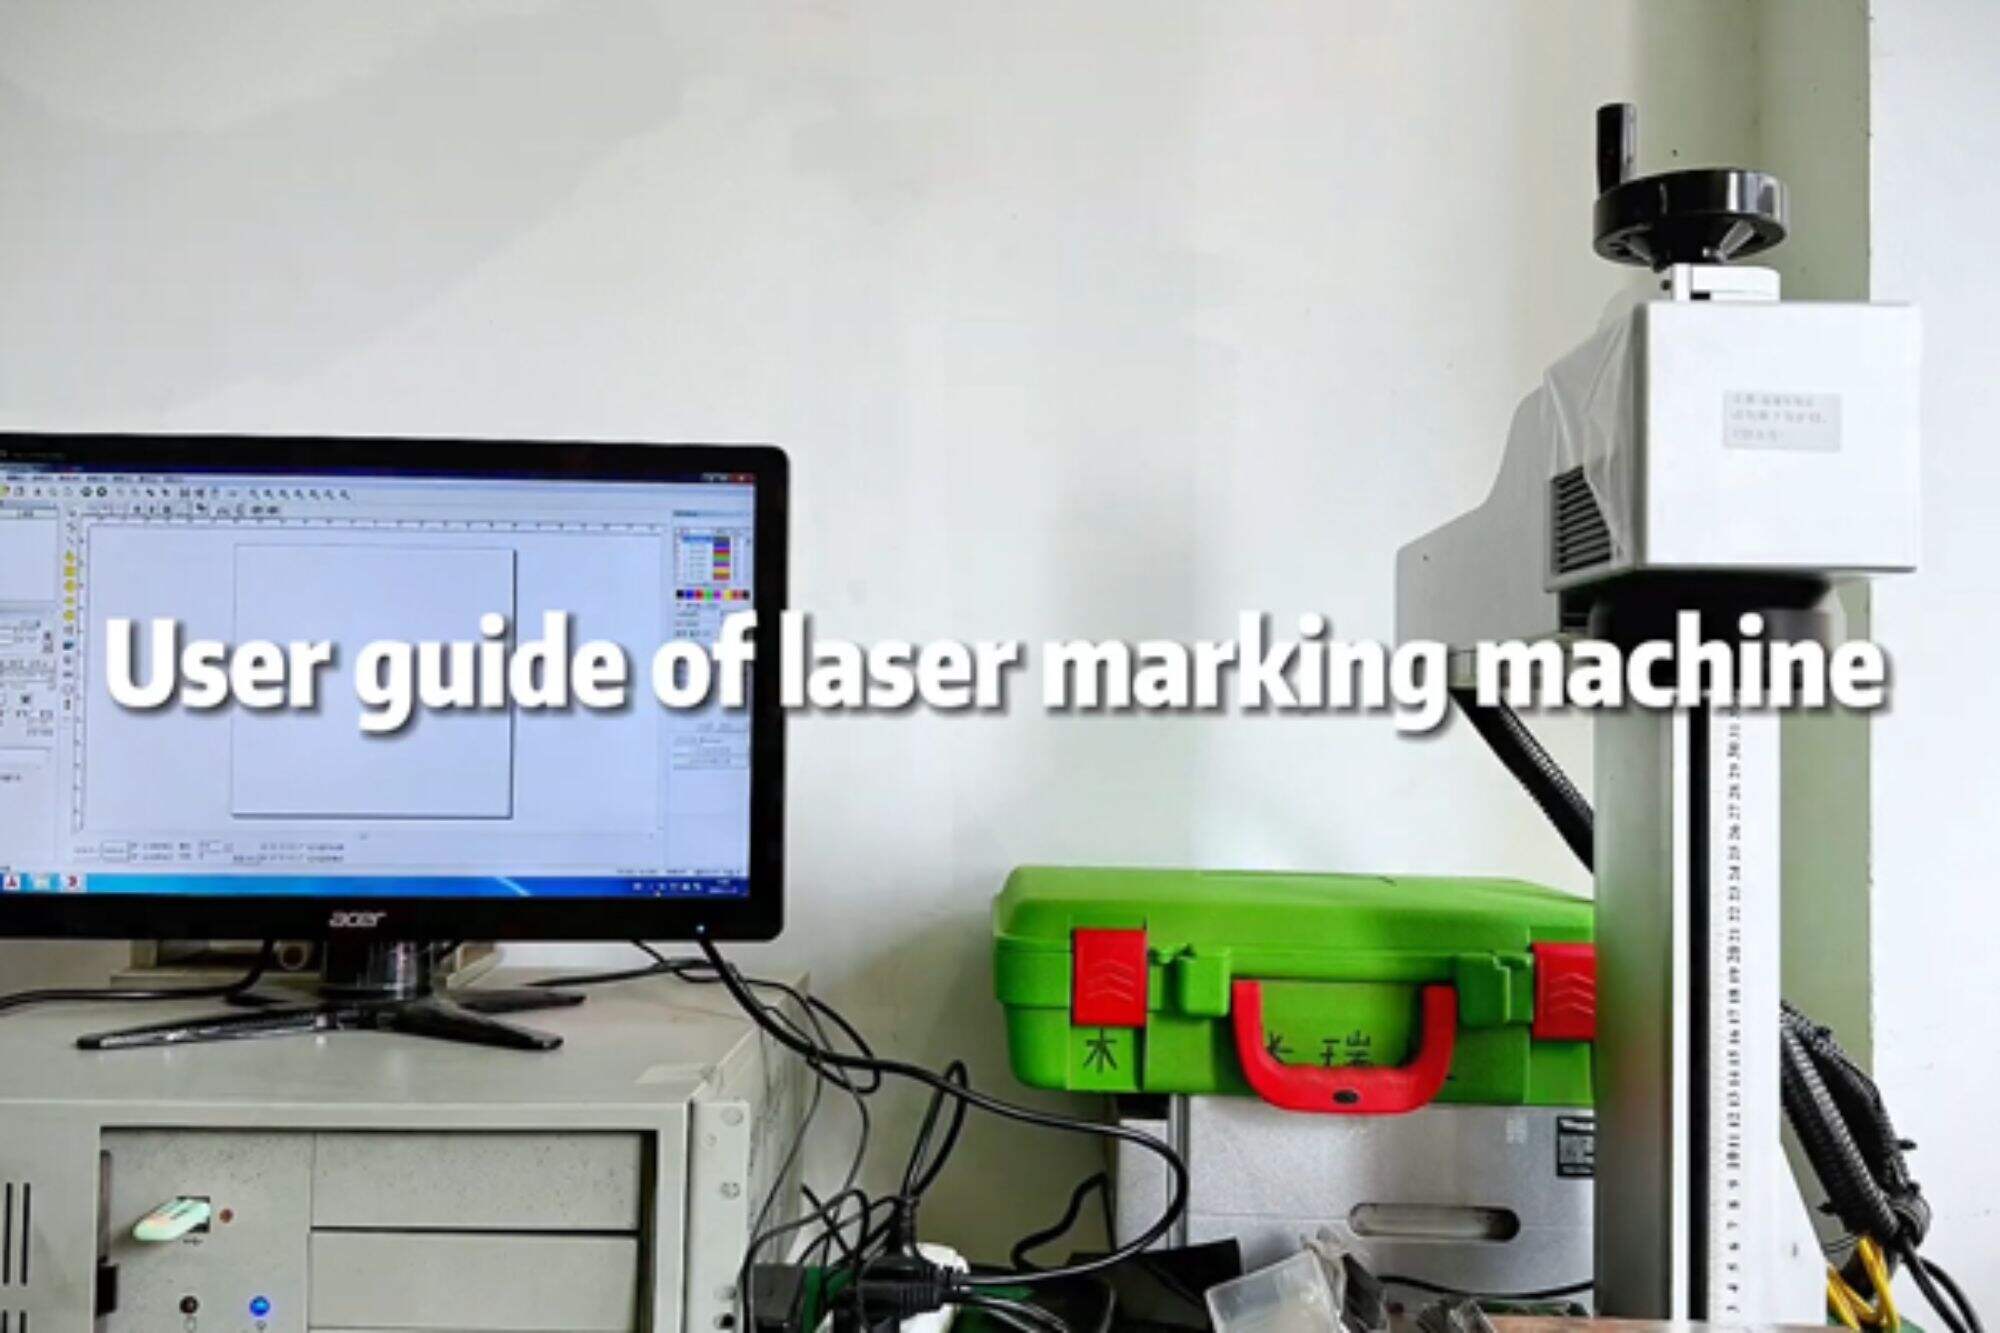 Dmk laser marking machine operation tutorial